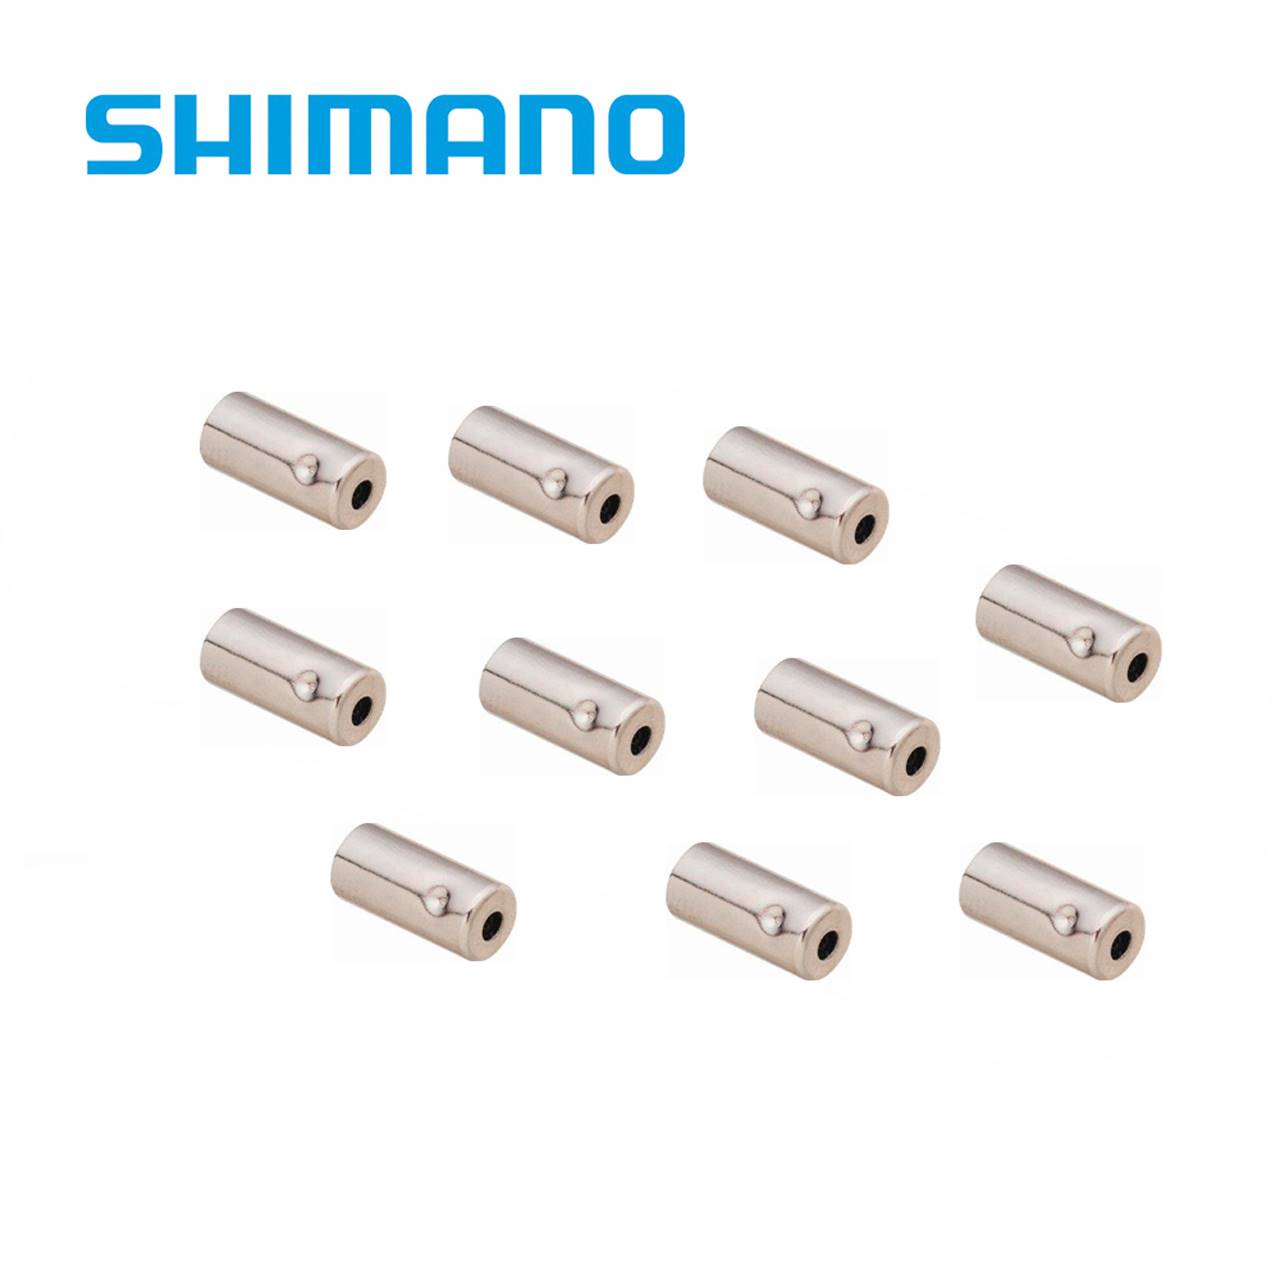 Shimano Endkappen für Bremszugaußenhülle Stahl 5mm